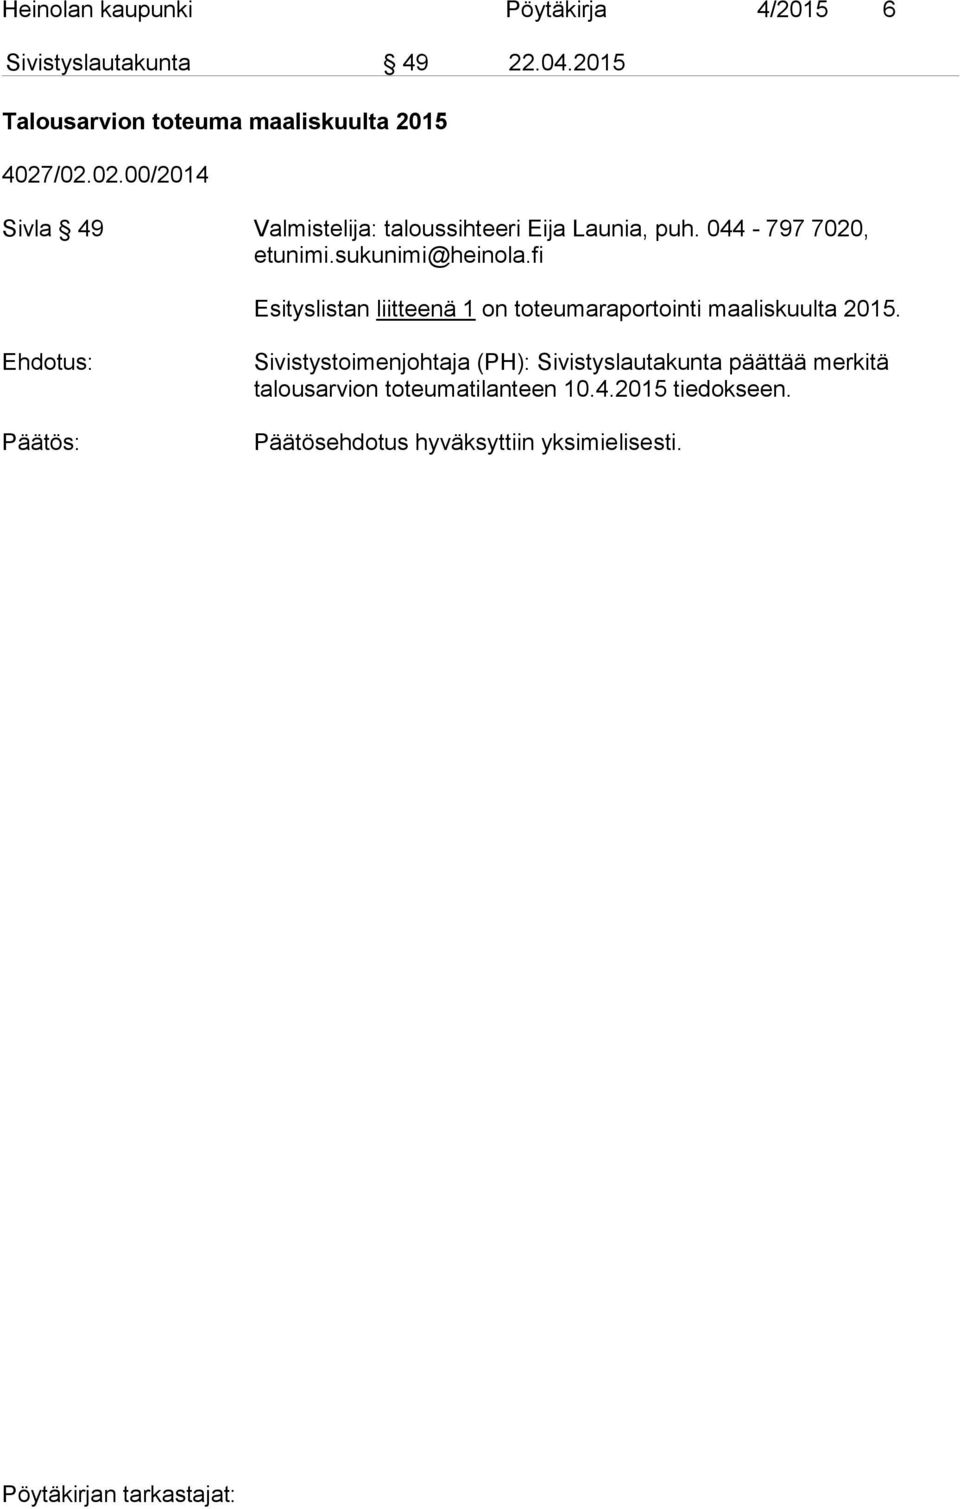 /02.02.00/2014 Sivla 49 Valmistelija: taloussihteeri Eija Launia, puh. 044-797 7020, etunimi.